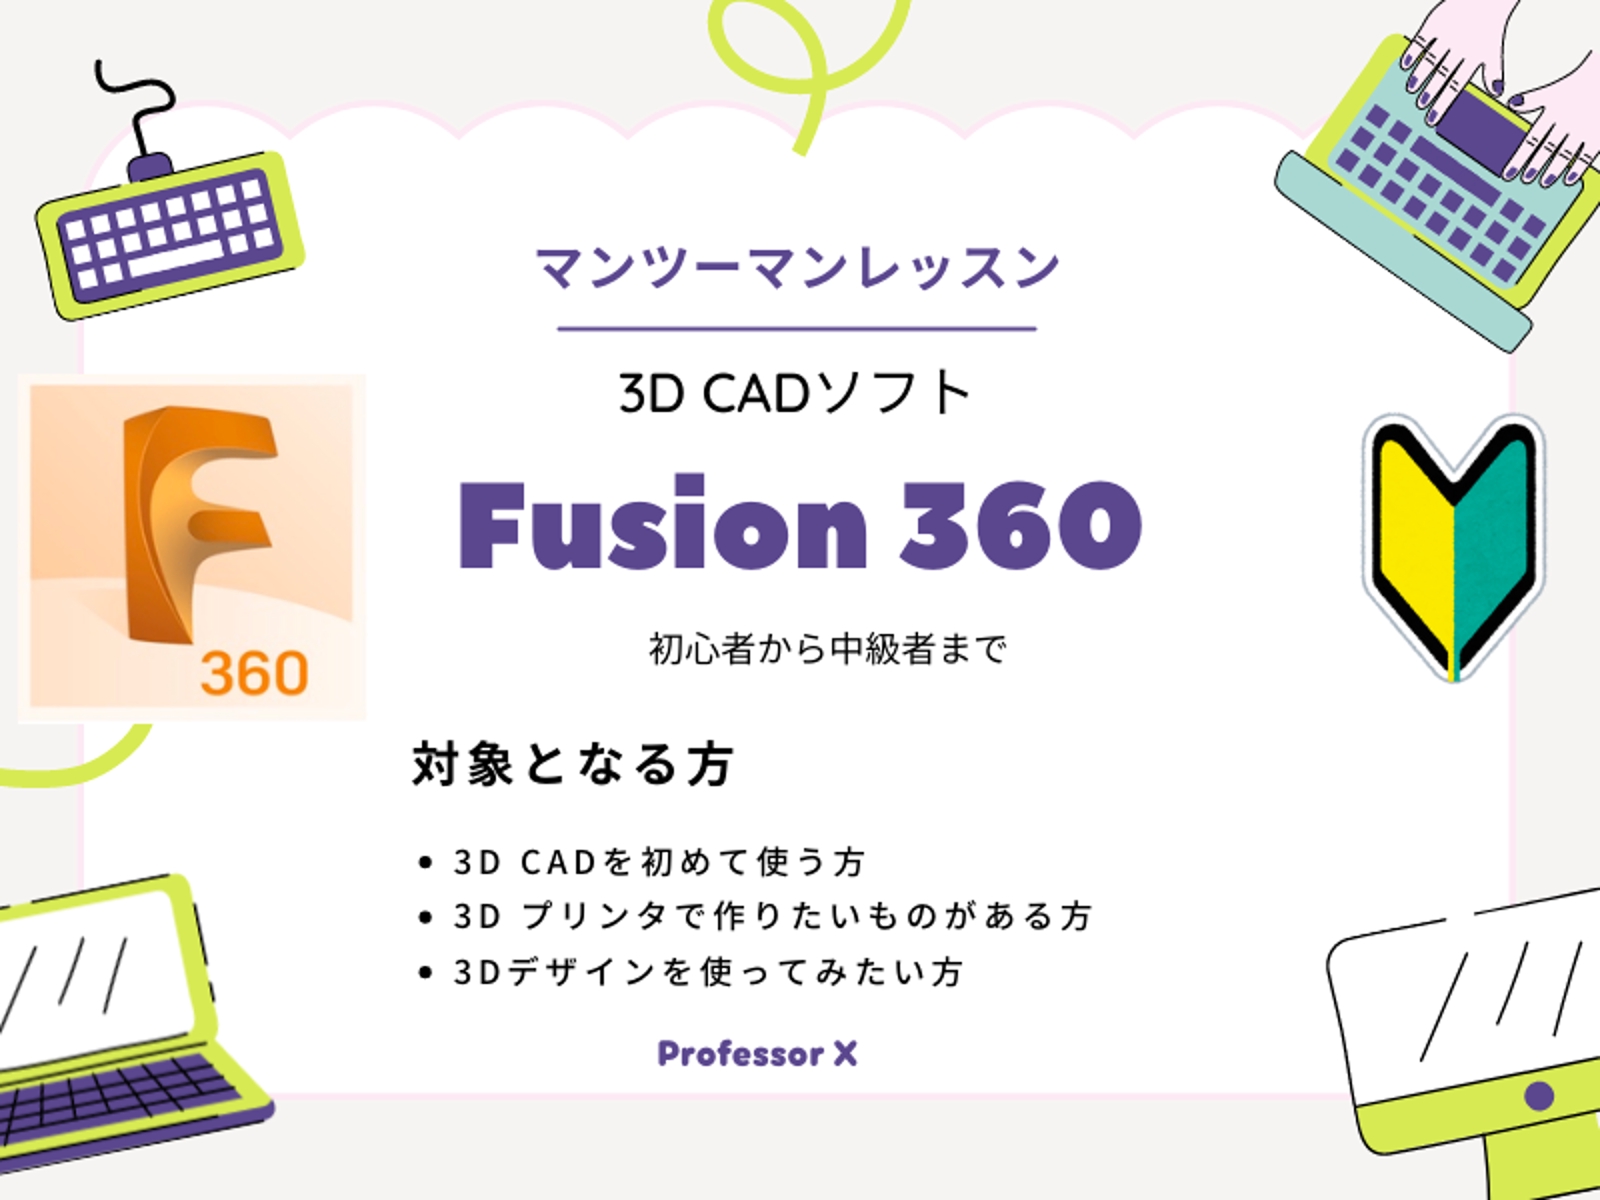 3D CAD Fusion 360の相談に乗ります-image1